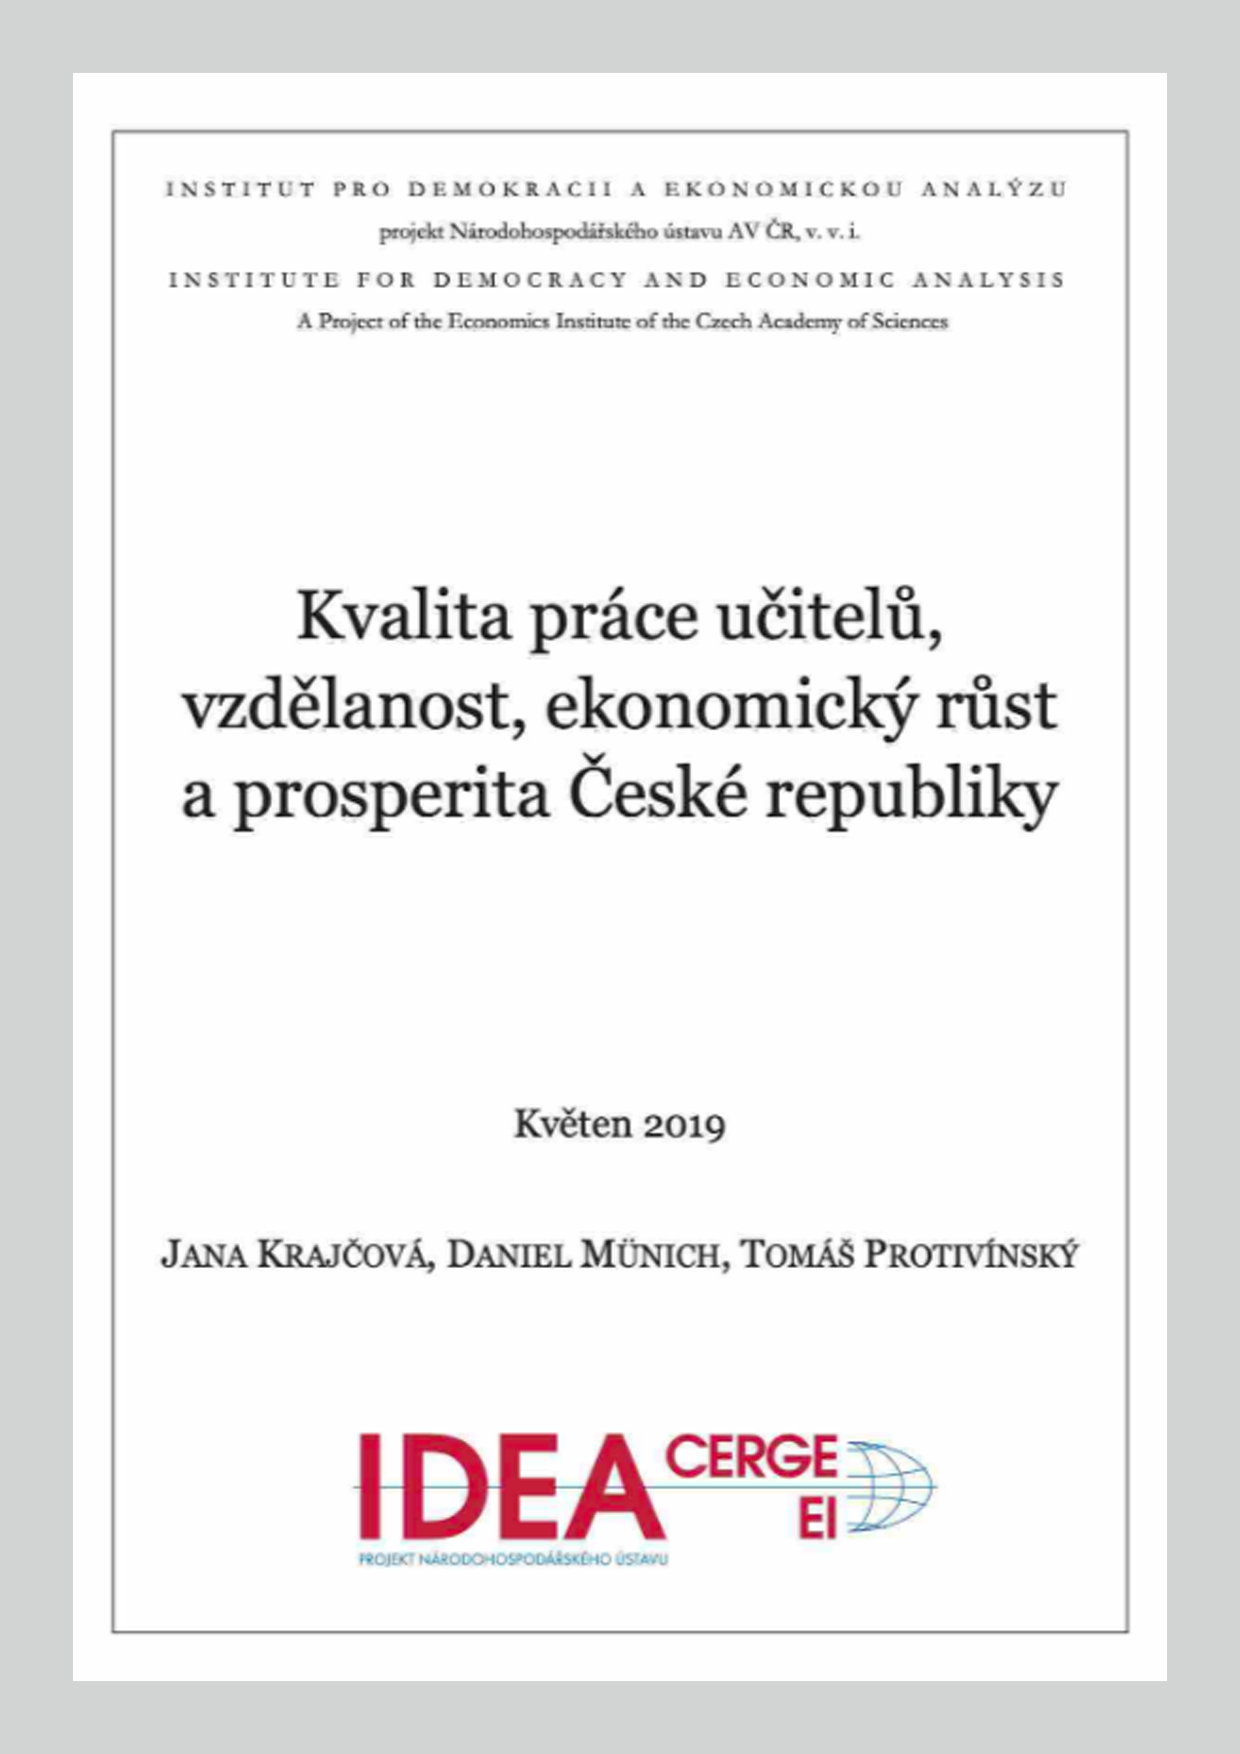 Kvalita práce učitelů, vzdělanost, ekonomický růst a prosperita České republiky